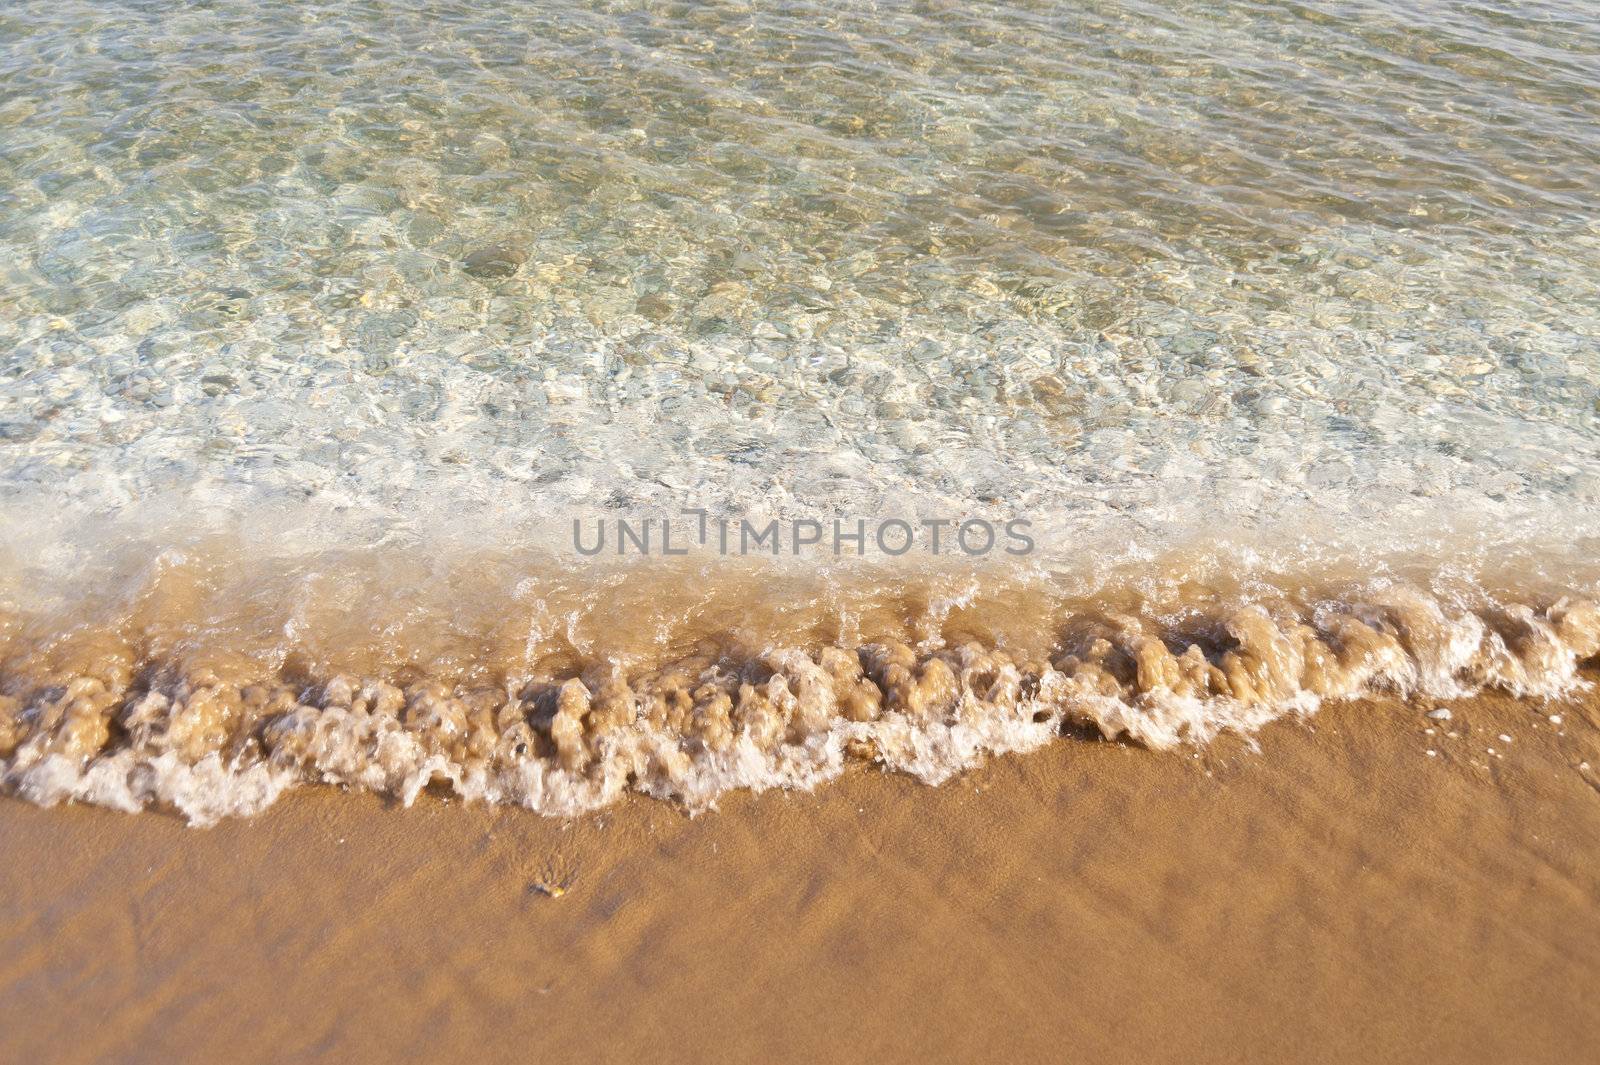 Beach on Samos